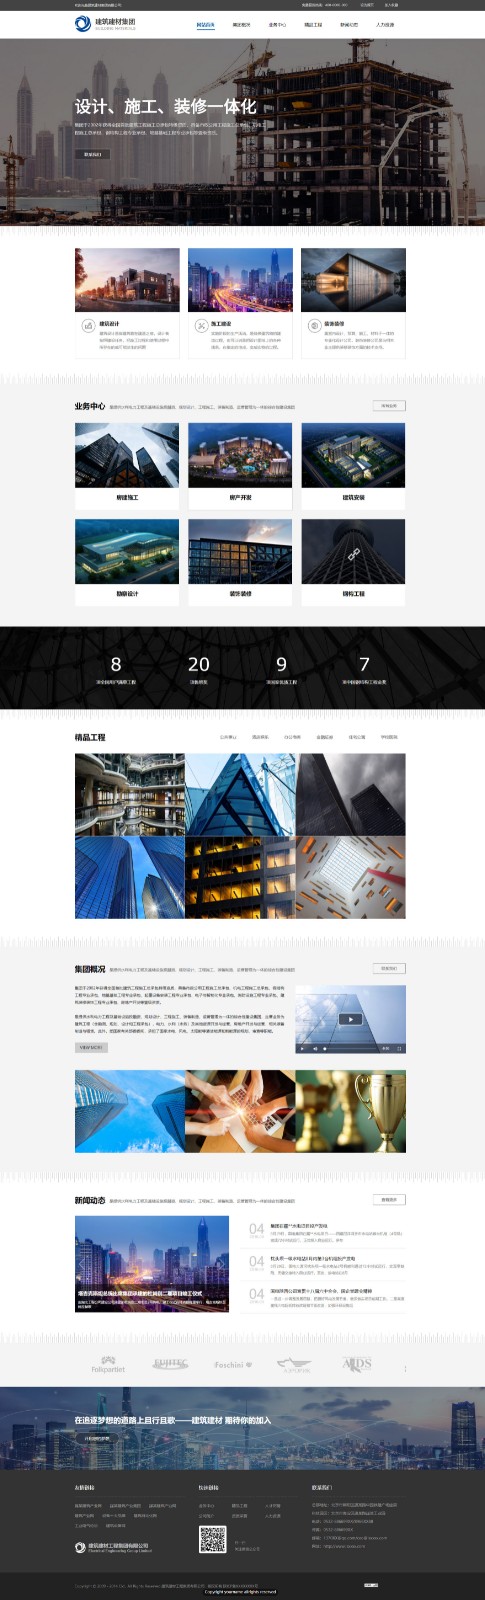 企业网站精美模板-architecture-451